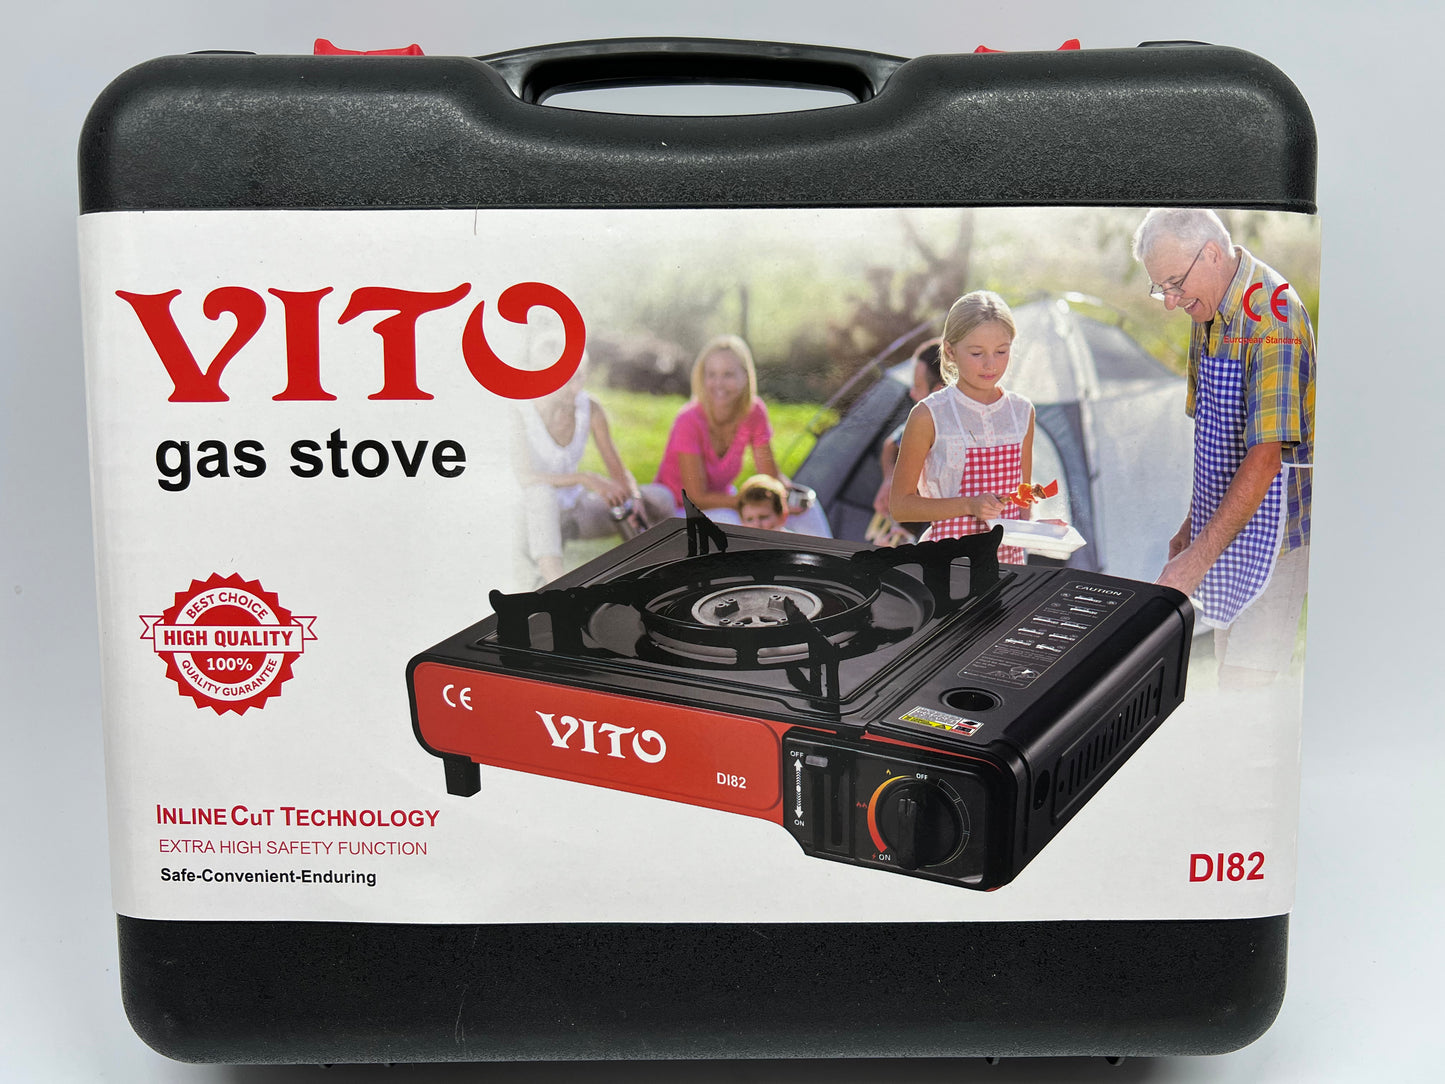 Vito Portable Gas Stove